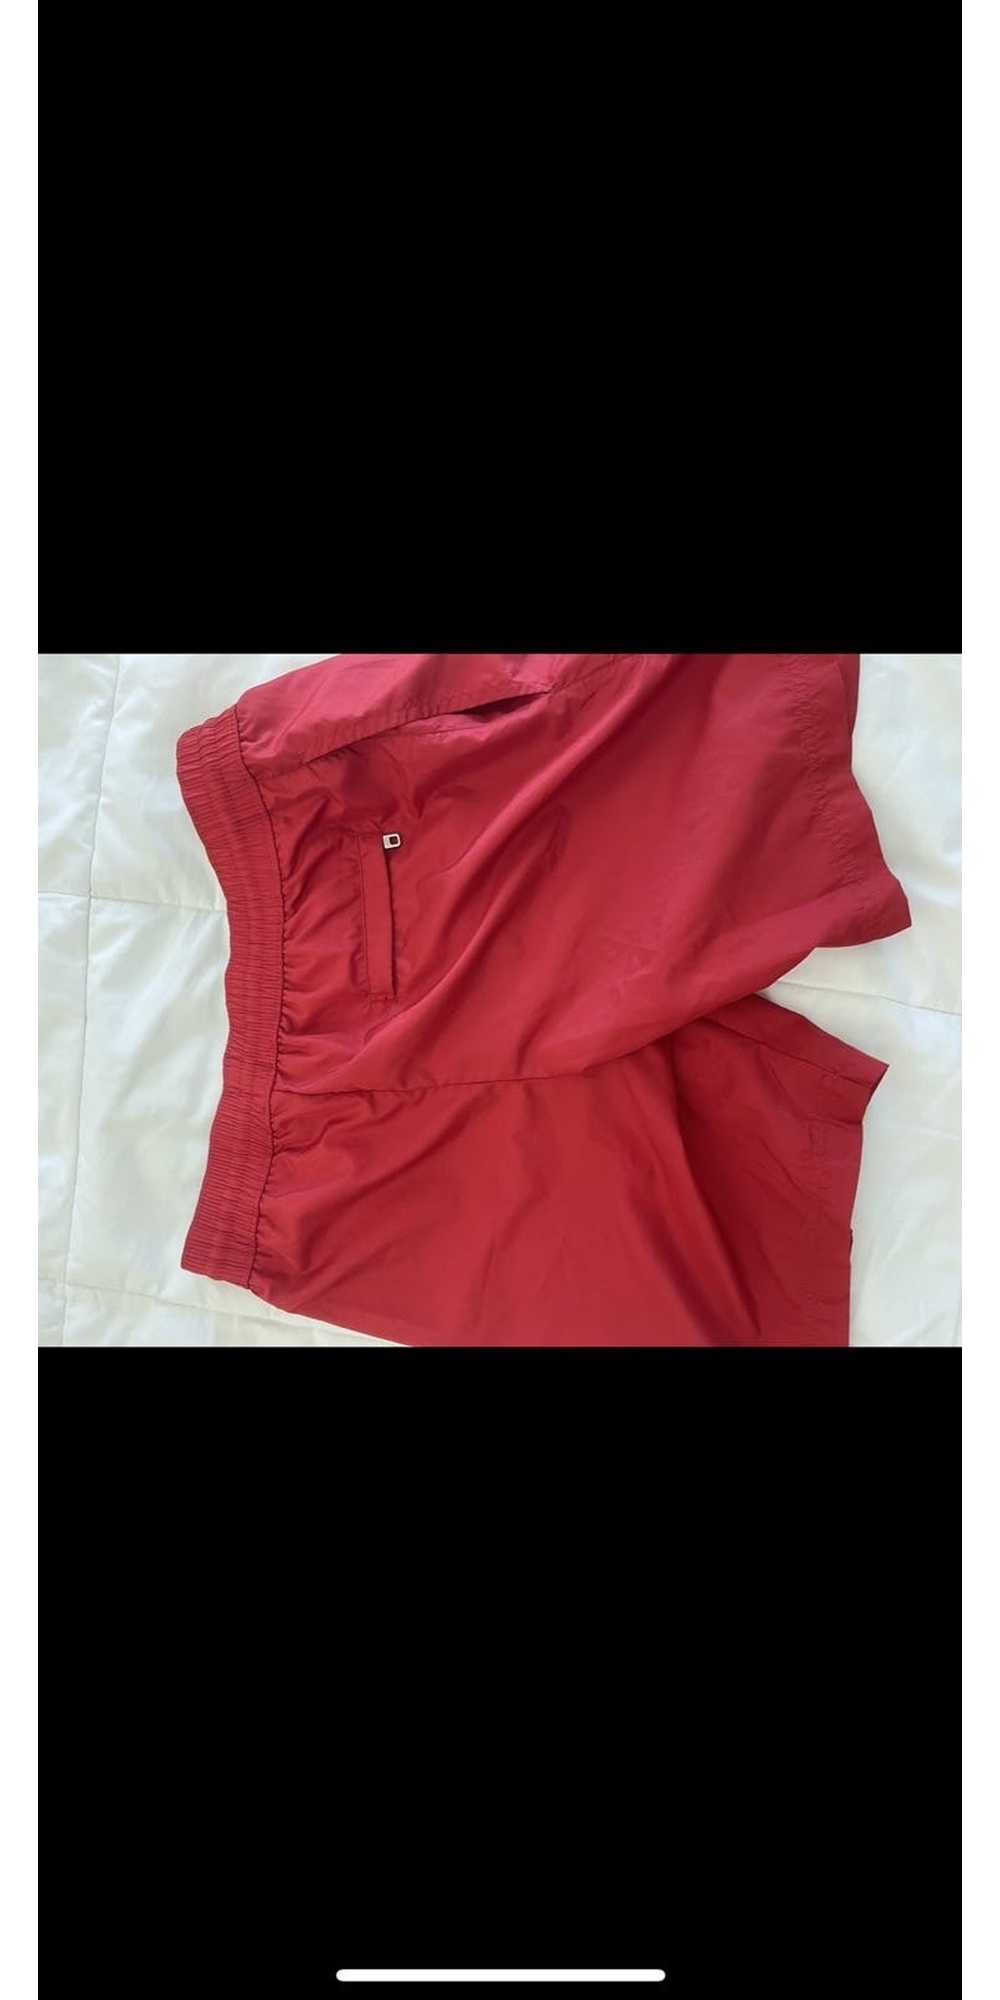 Dolce & Gabbana Dolce and gabbana red swim shorts - image 2